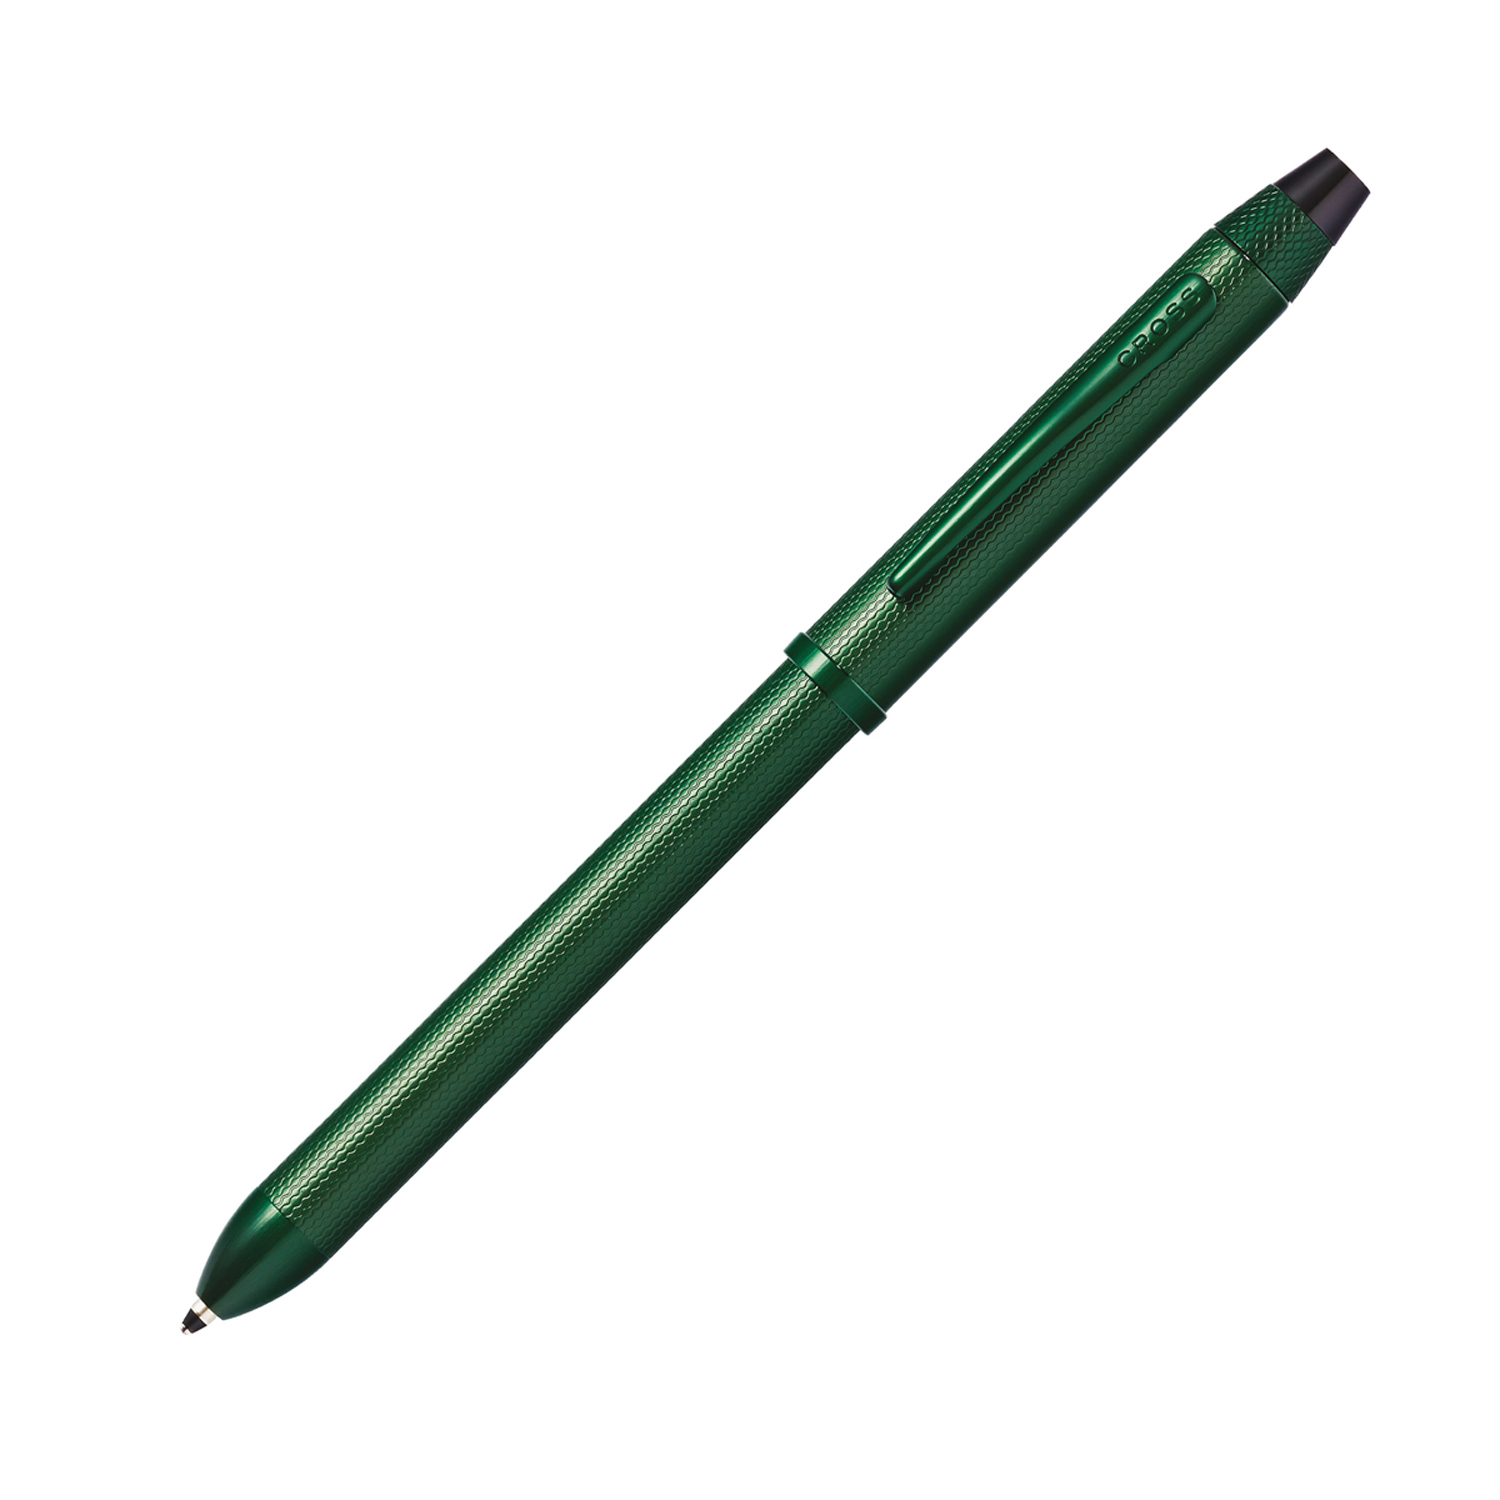 Ручка многофункциональная со стилусом CROSS Tech3+™ AT0090-24